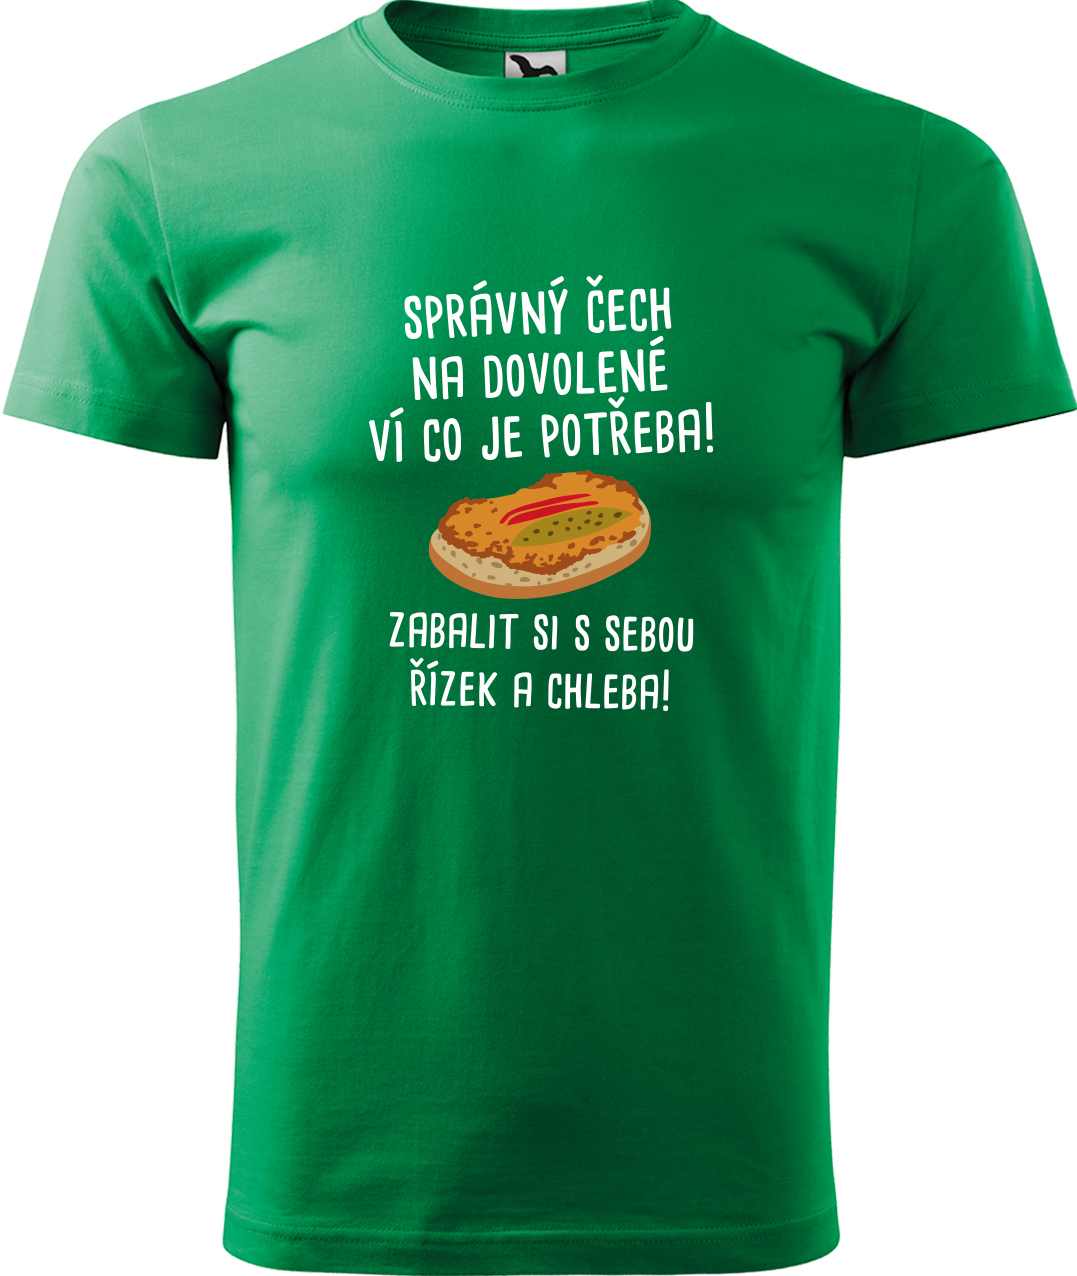 Pánské cestovatelské tričko - Správný Čech na dovolené, ví co je potřeba! Velikost: L, Barva: Středně zelená (16), Střih: pánský